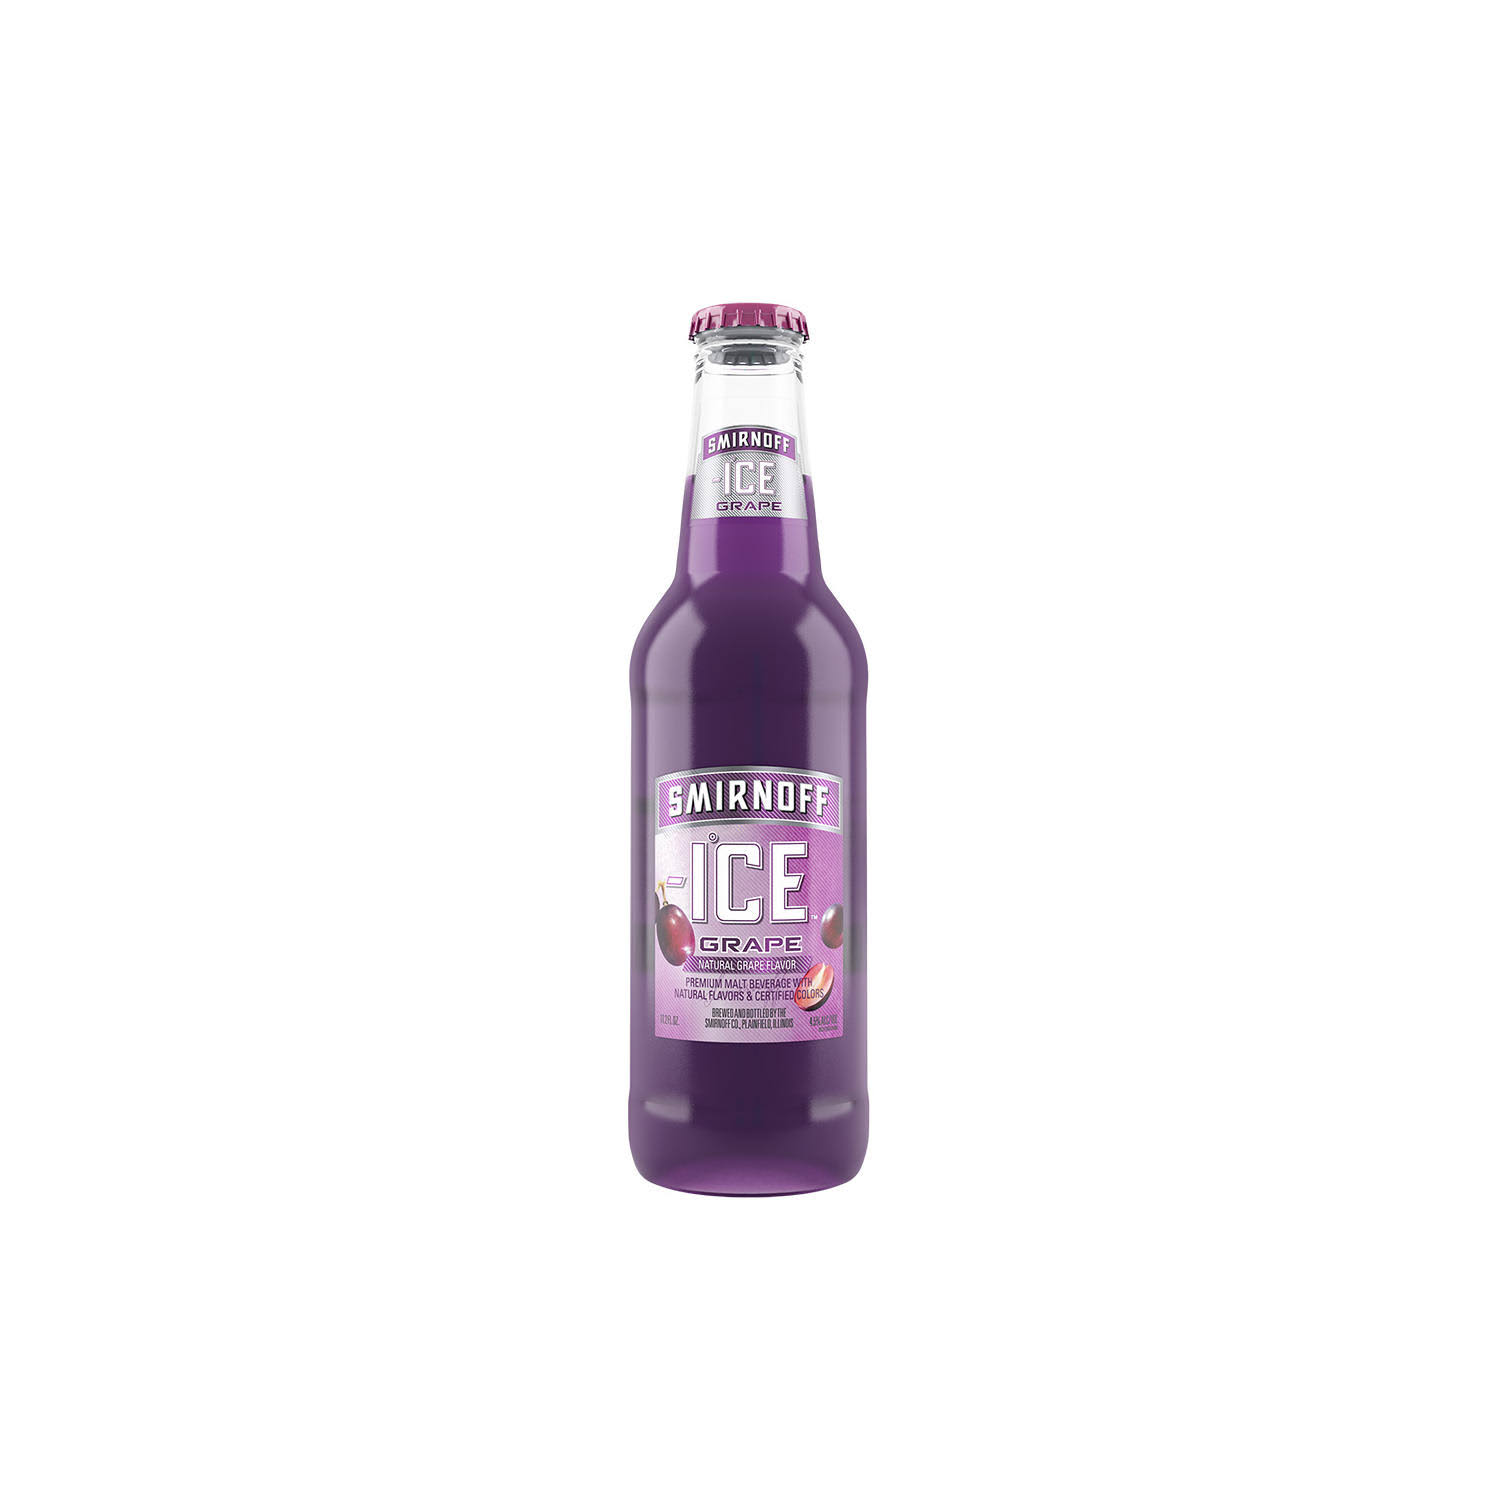 Smirnoff Ice Wild Grape Beer - 6 Bottles